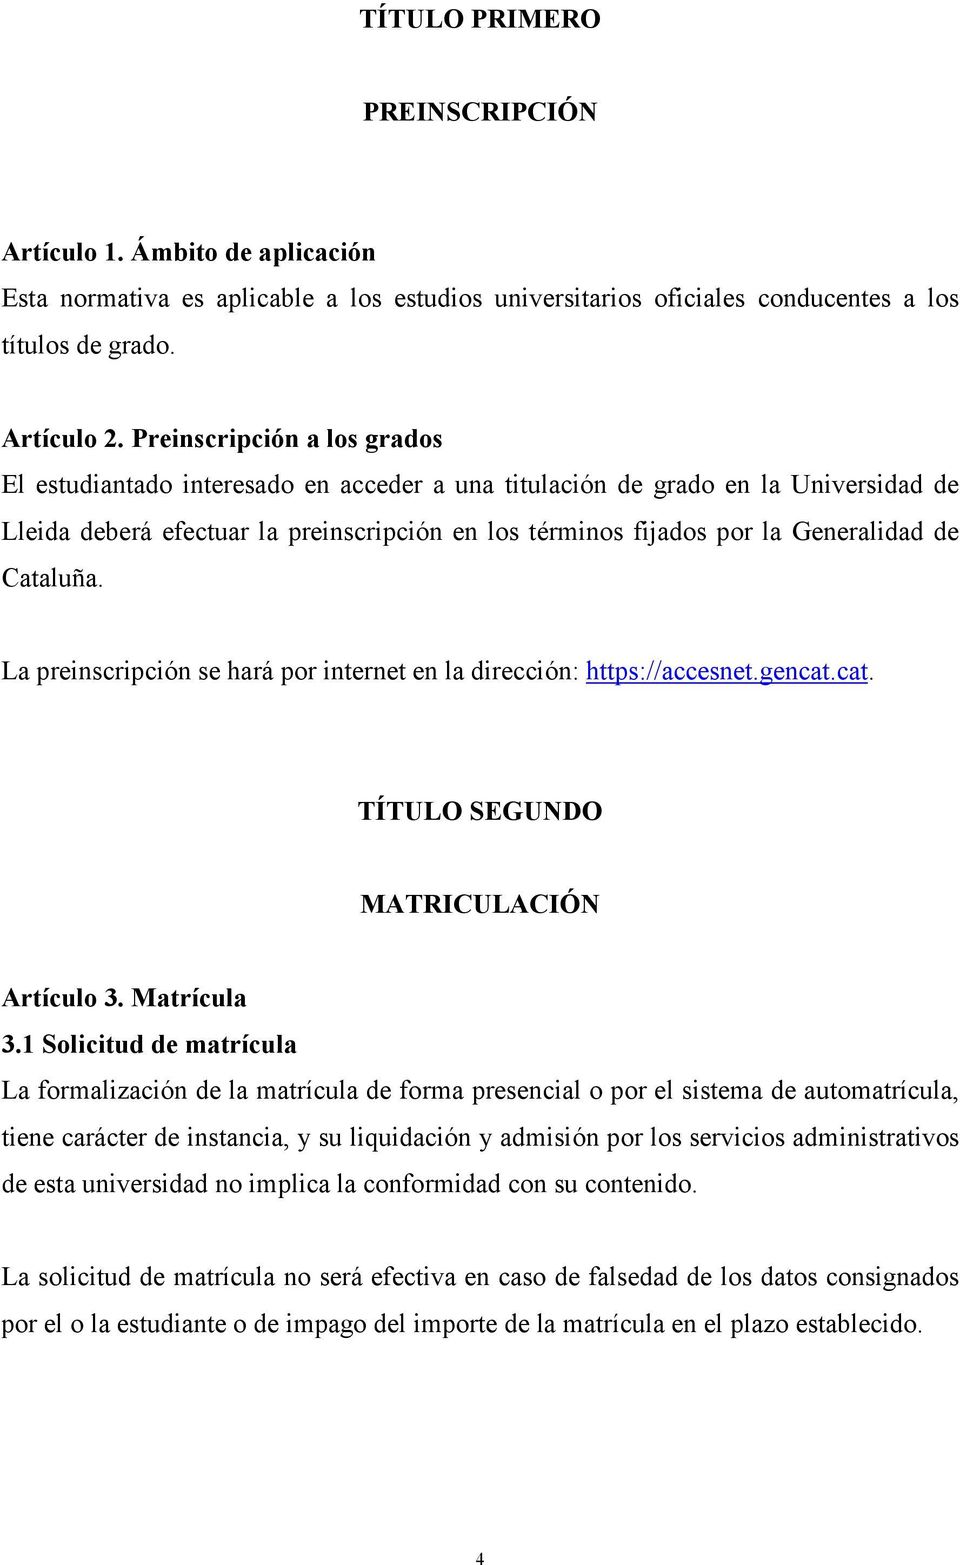 Cataluña. La preinscripción se hará por internet en la dirección: https://accesnet.gencat.cat. TÍTULO SEGUNDO MATRICULACIÓN Artículo 3. Matrícula 3.